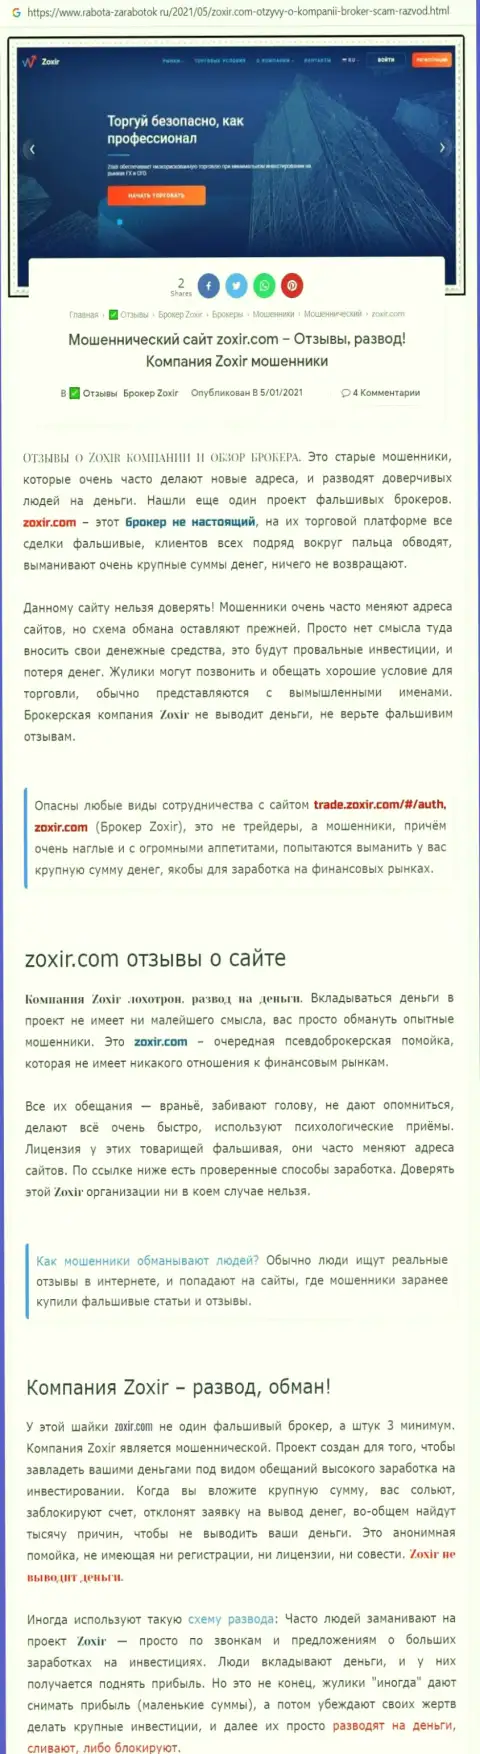 Автор обзора советует не отправлять финансовые средства в разводняк Zoxir - ЗАБЕРУТ !!!